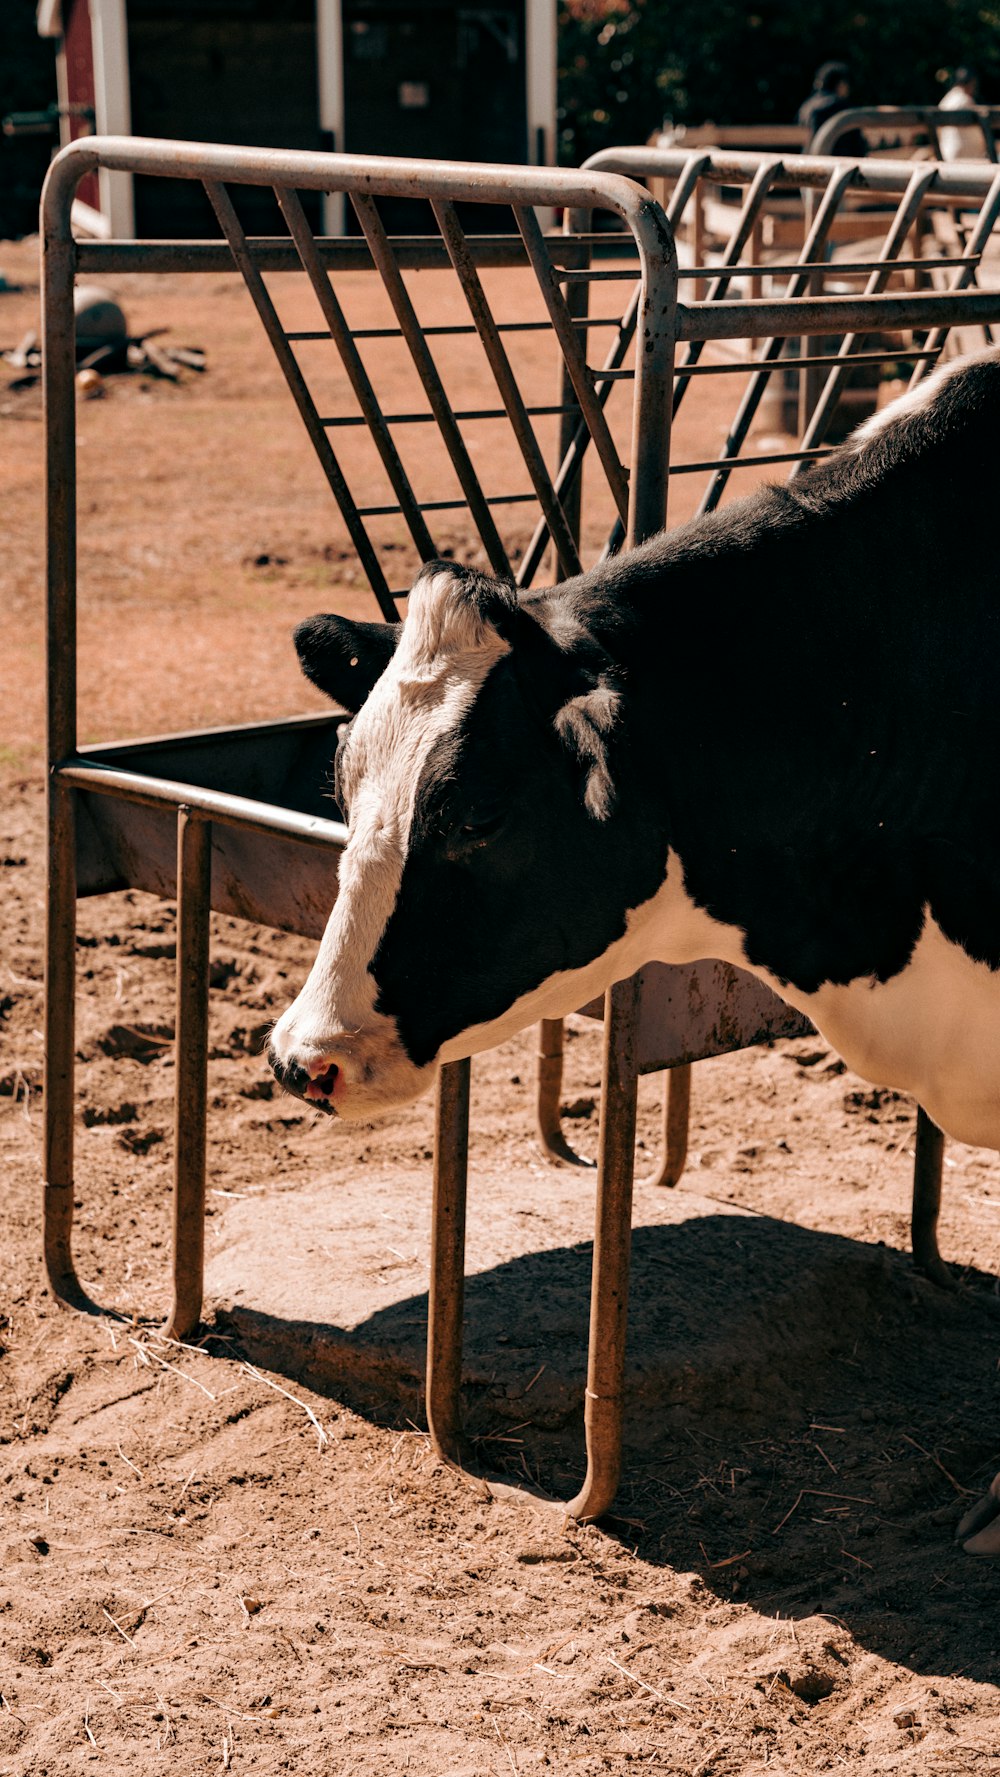 a cow in a pen